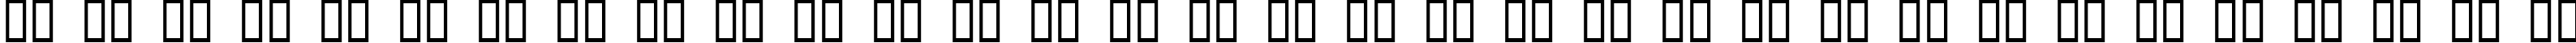 Пример написания русского алфавита шрифтом Caddy